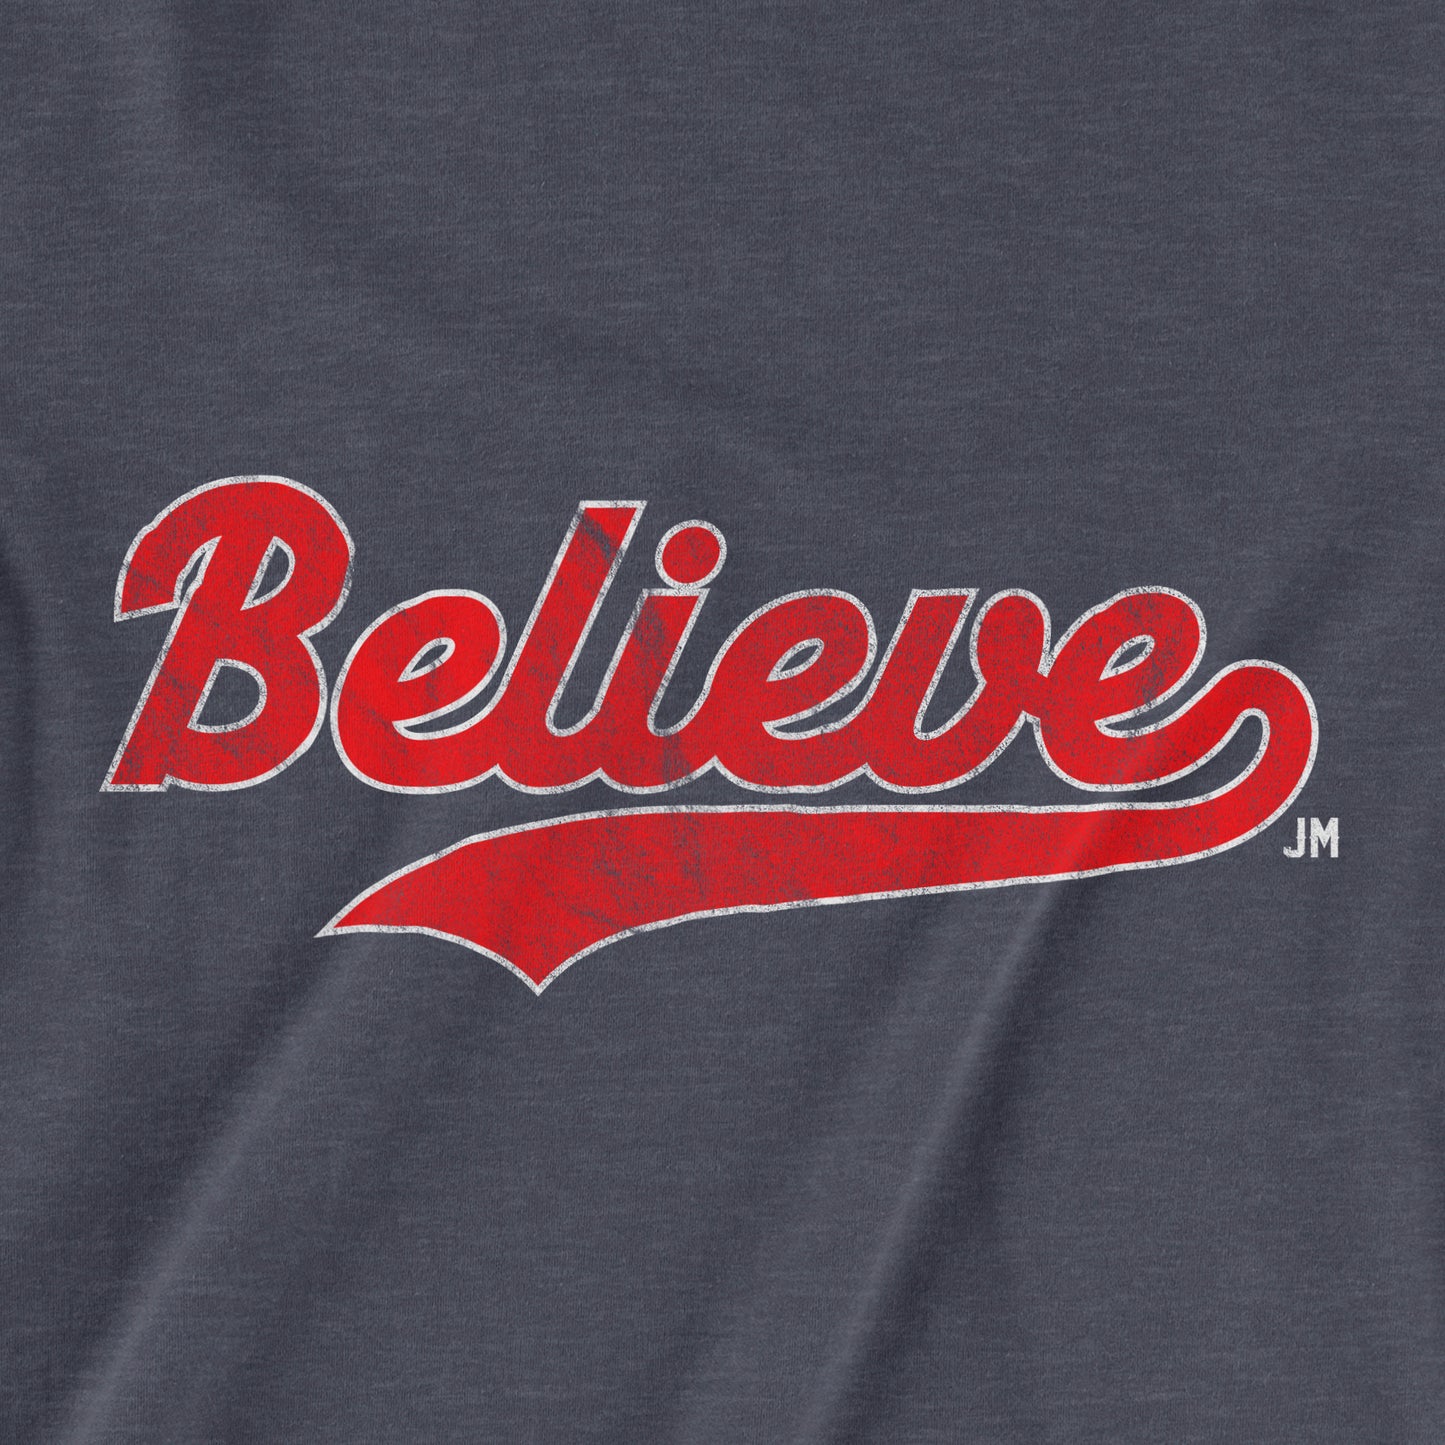 Believe | T-Shirt